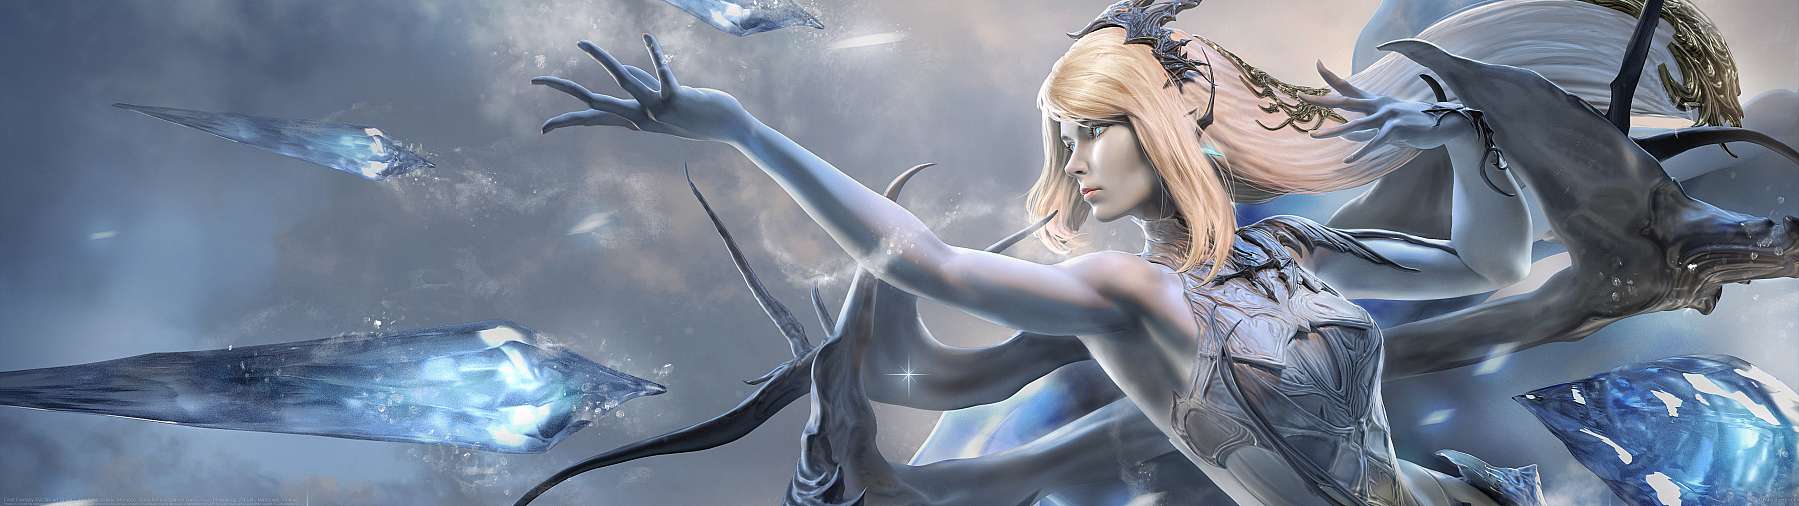 Final Fantasy XVI fan art Shiva ultrawide wallpaper